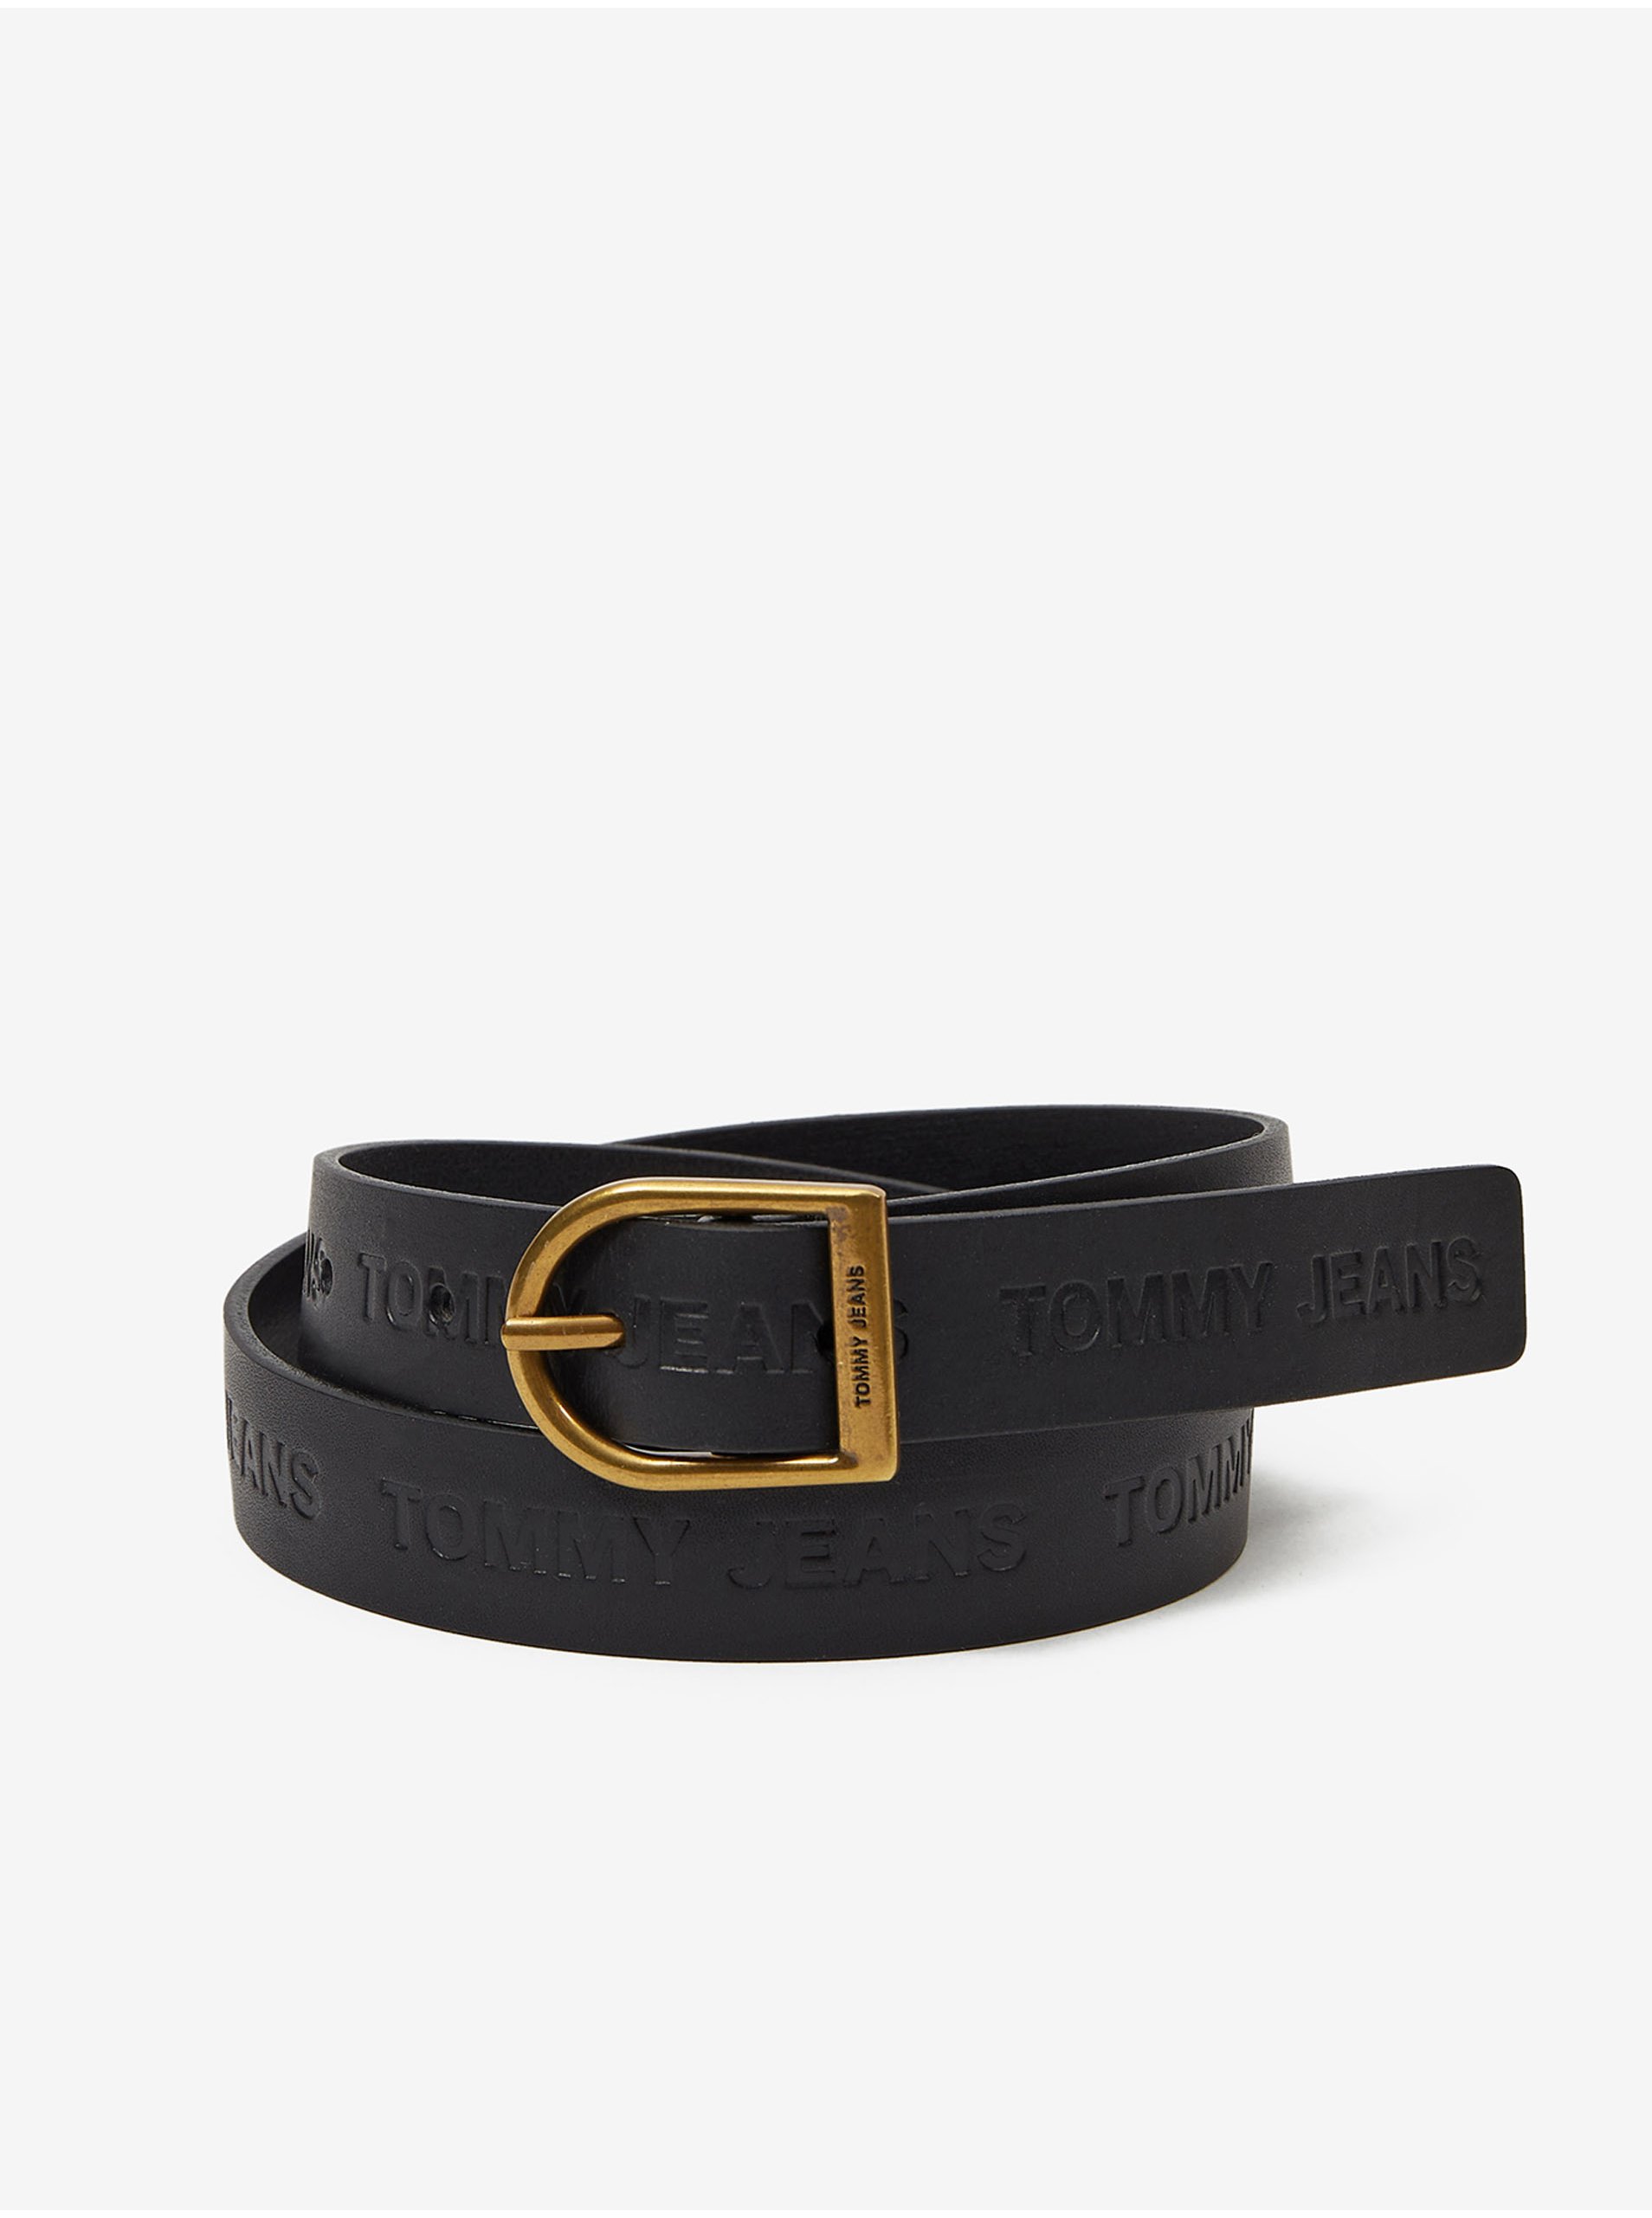 Black Women's Leather Belt Tommy Jeans Logo Fashion Belt - Women